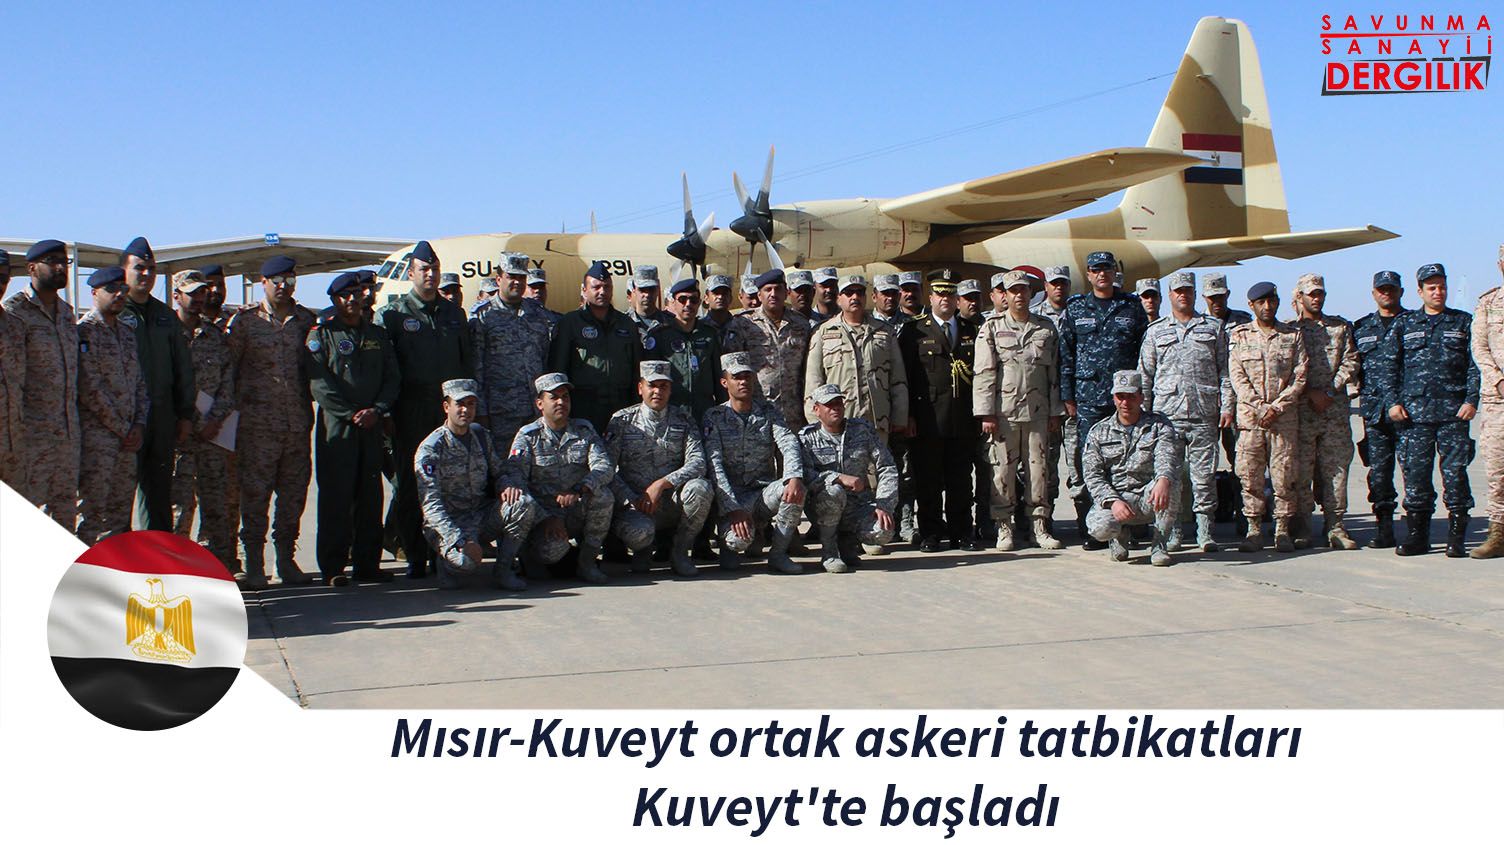 Mısır-Kuveyt ortak askeri tatbikatları Kuveyt'te başladı